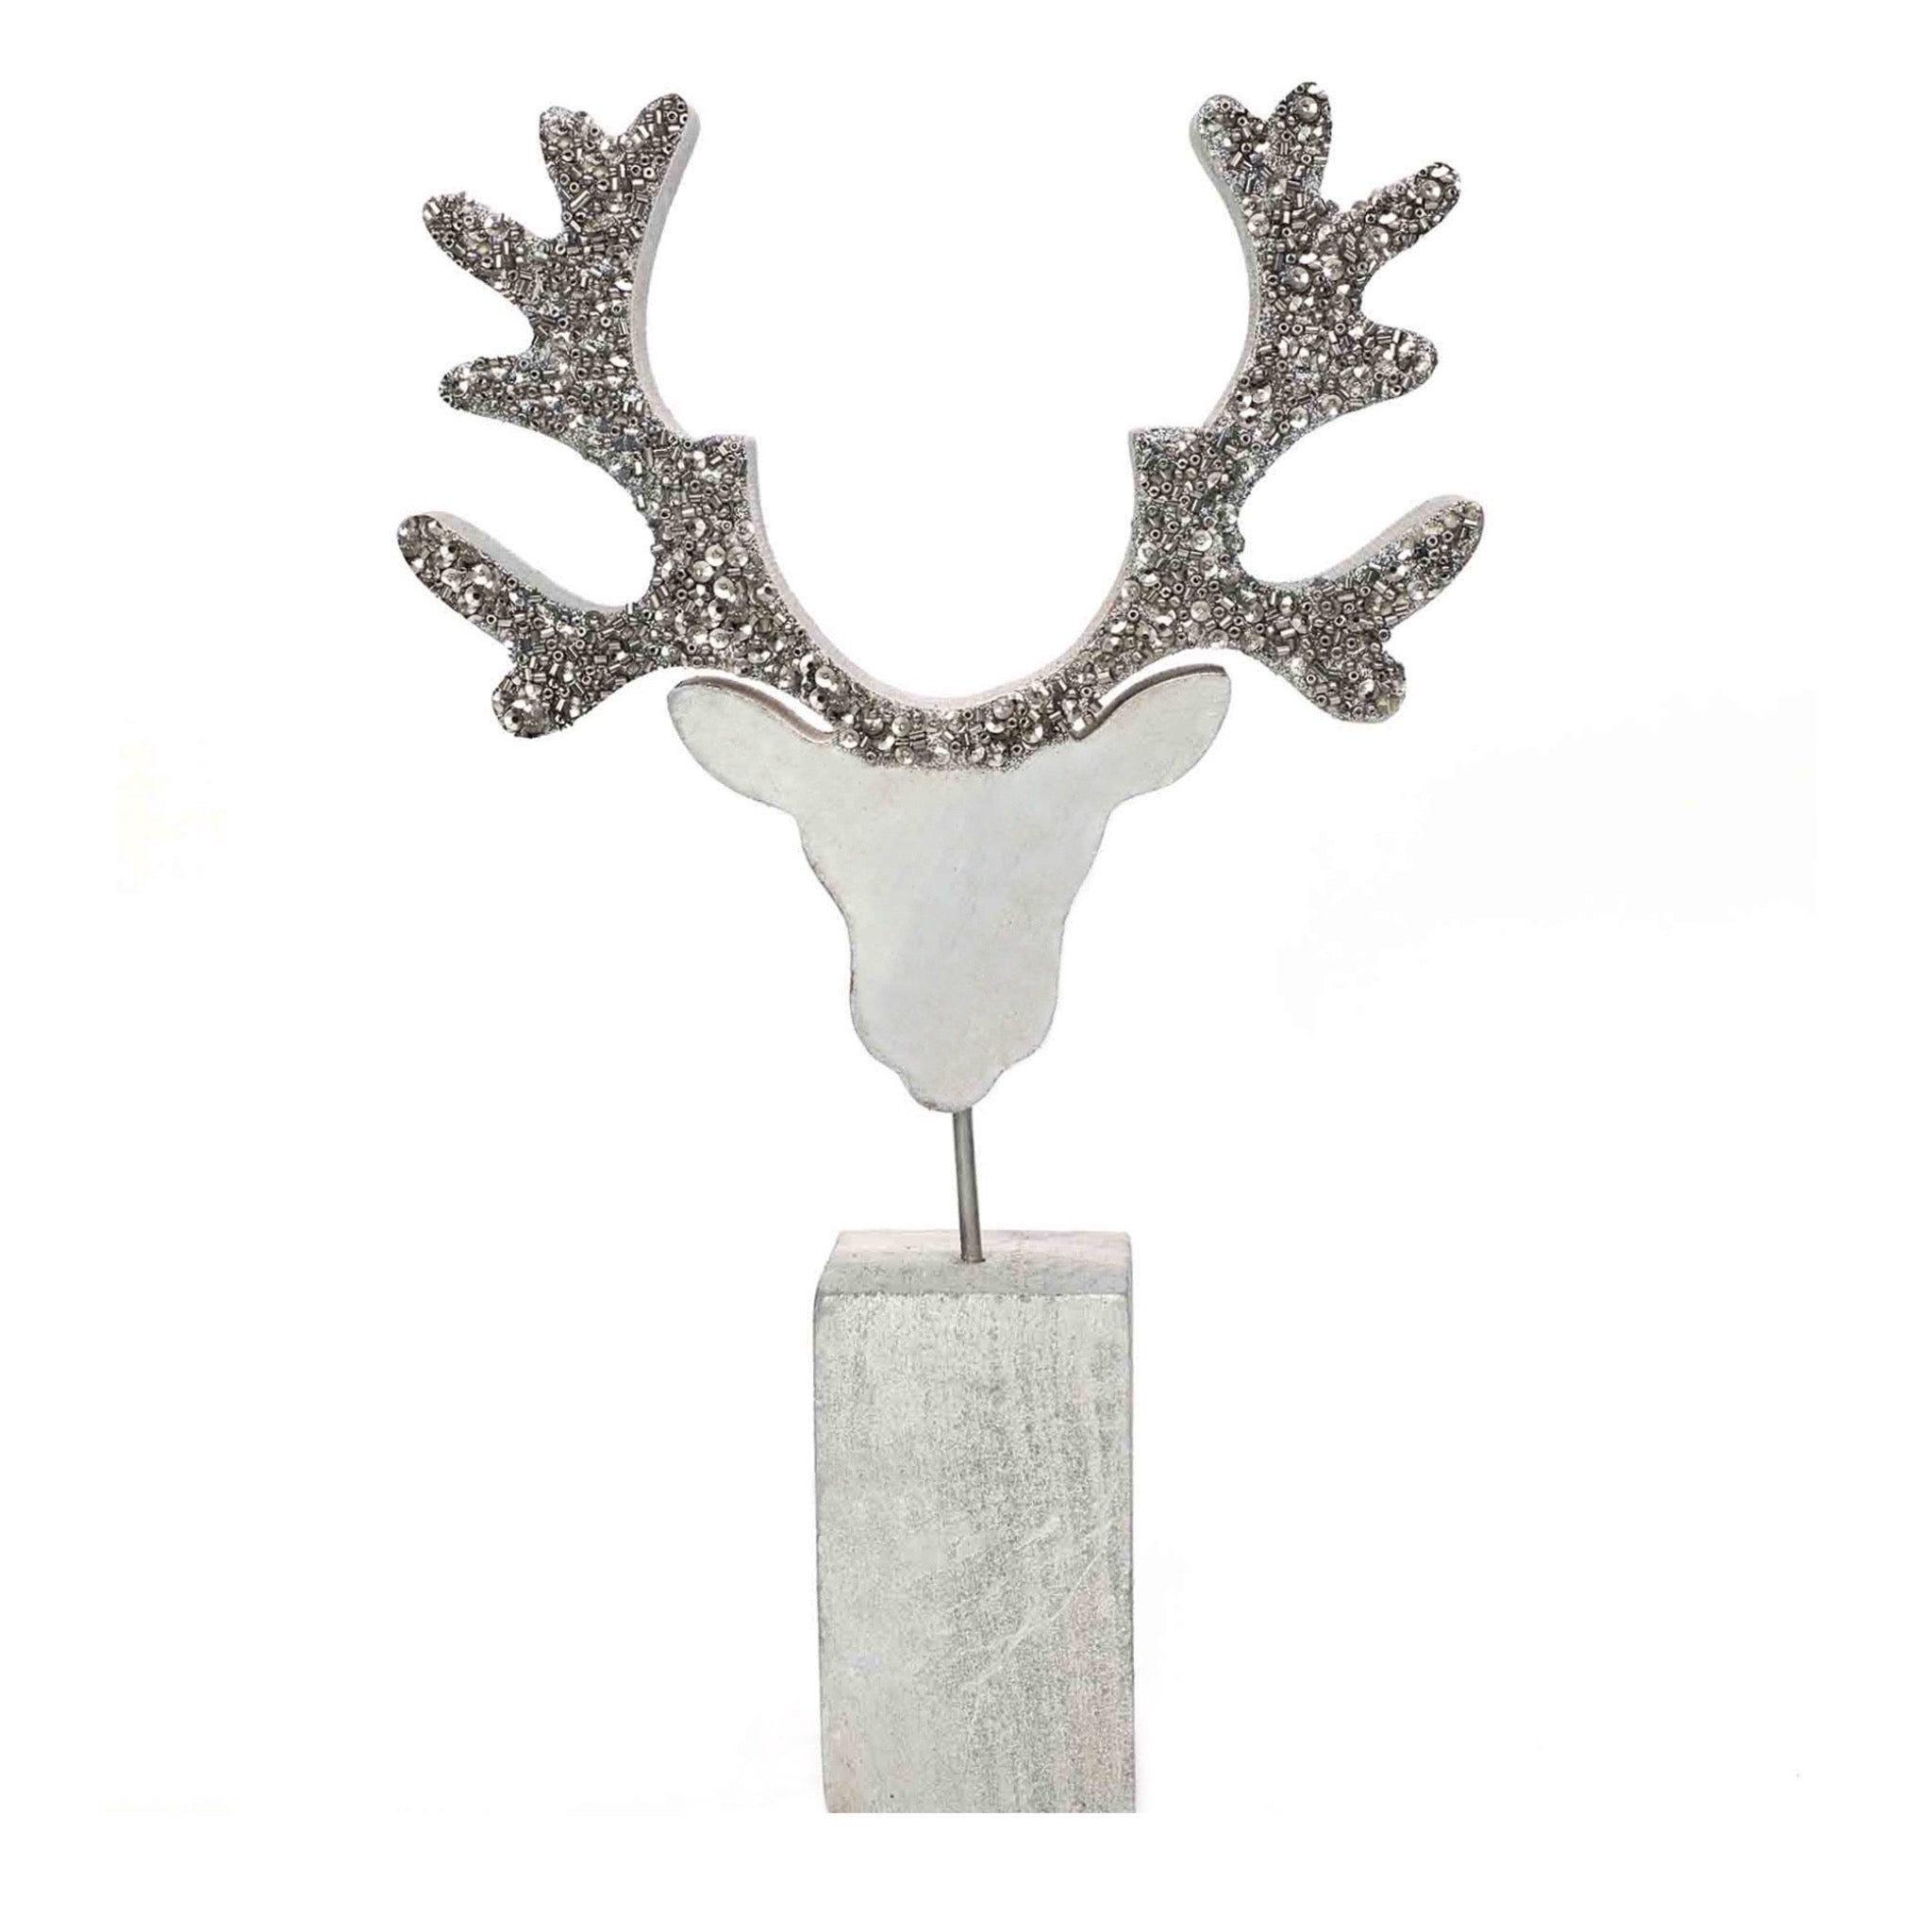 Oh Deer! Wood Sculpture # 1 in Silver